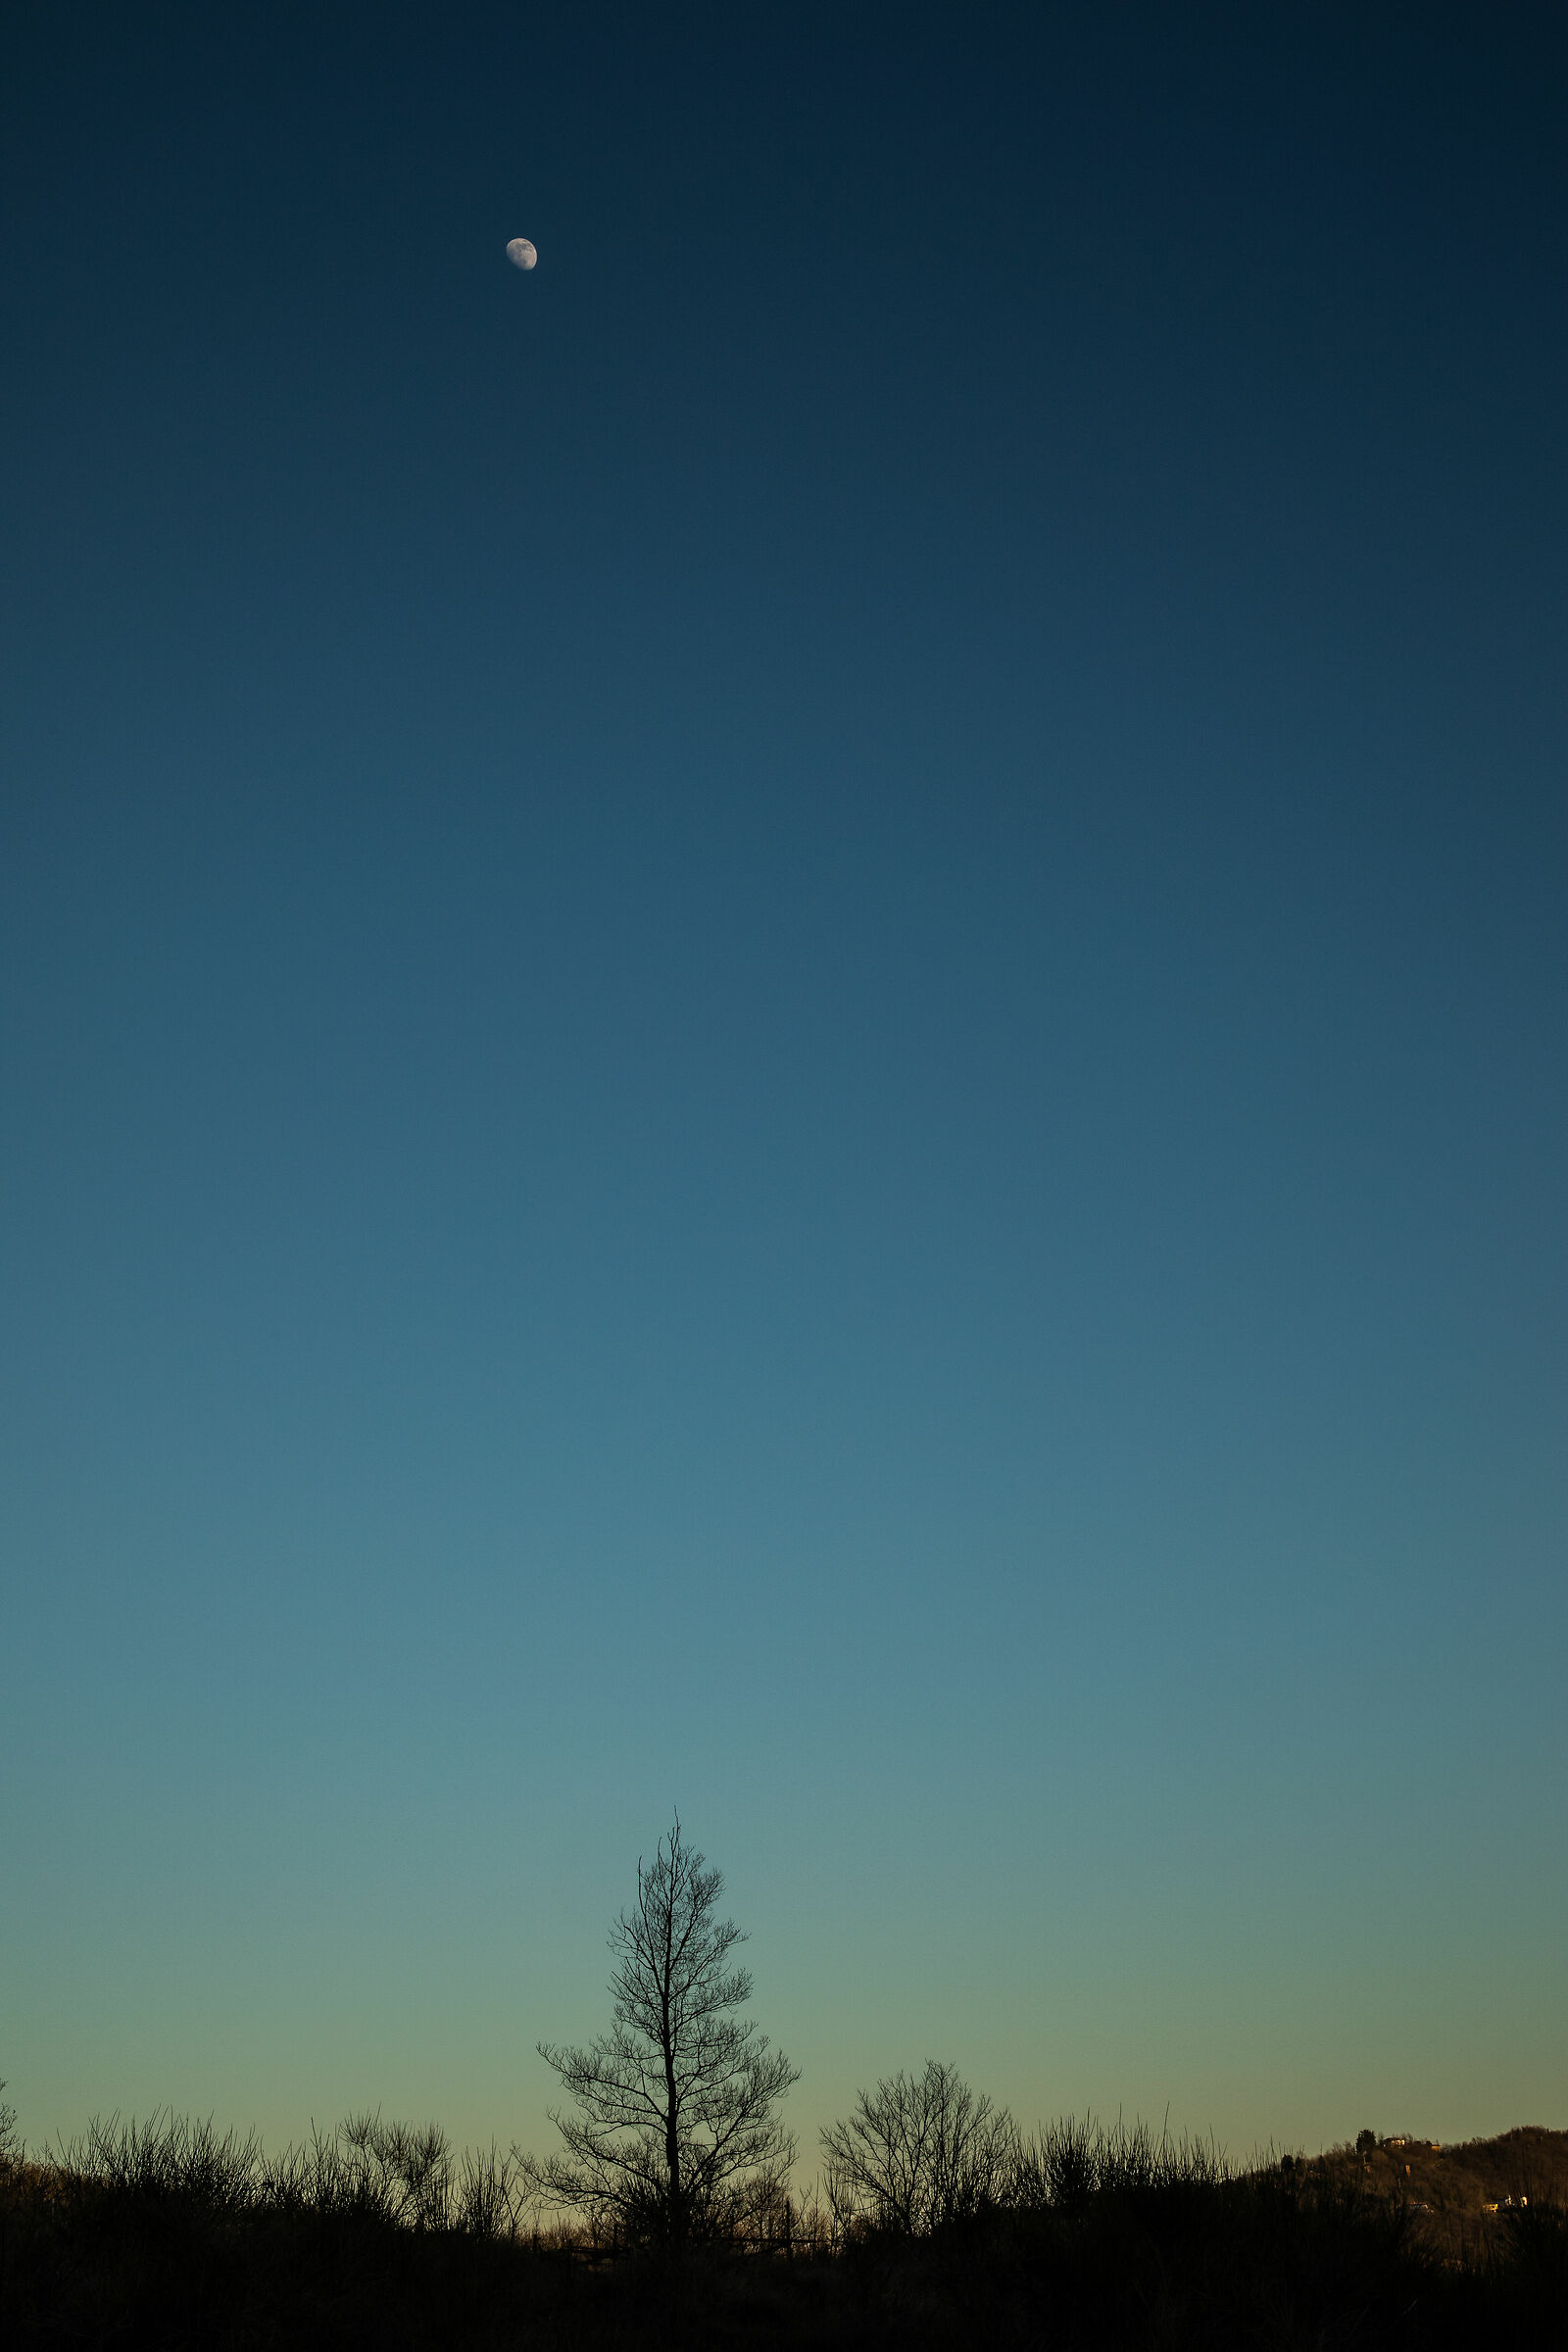 Landscape, silhouette, tree, moon...